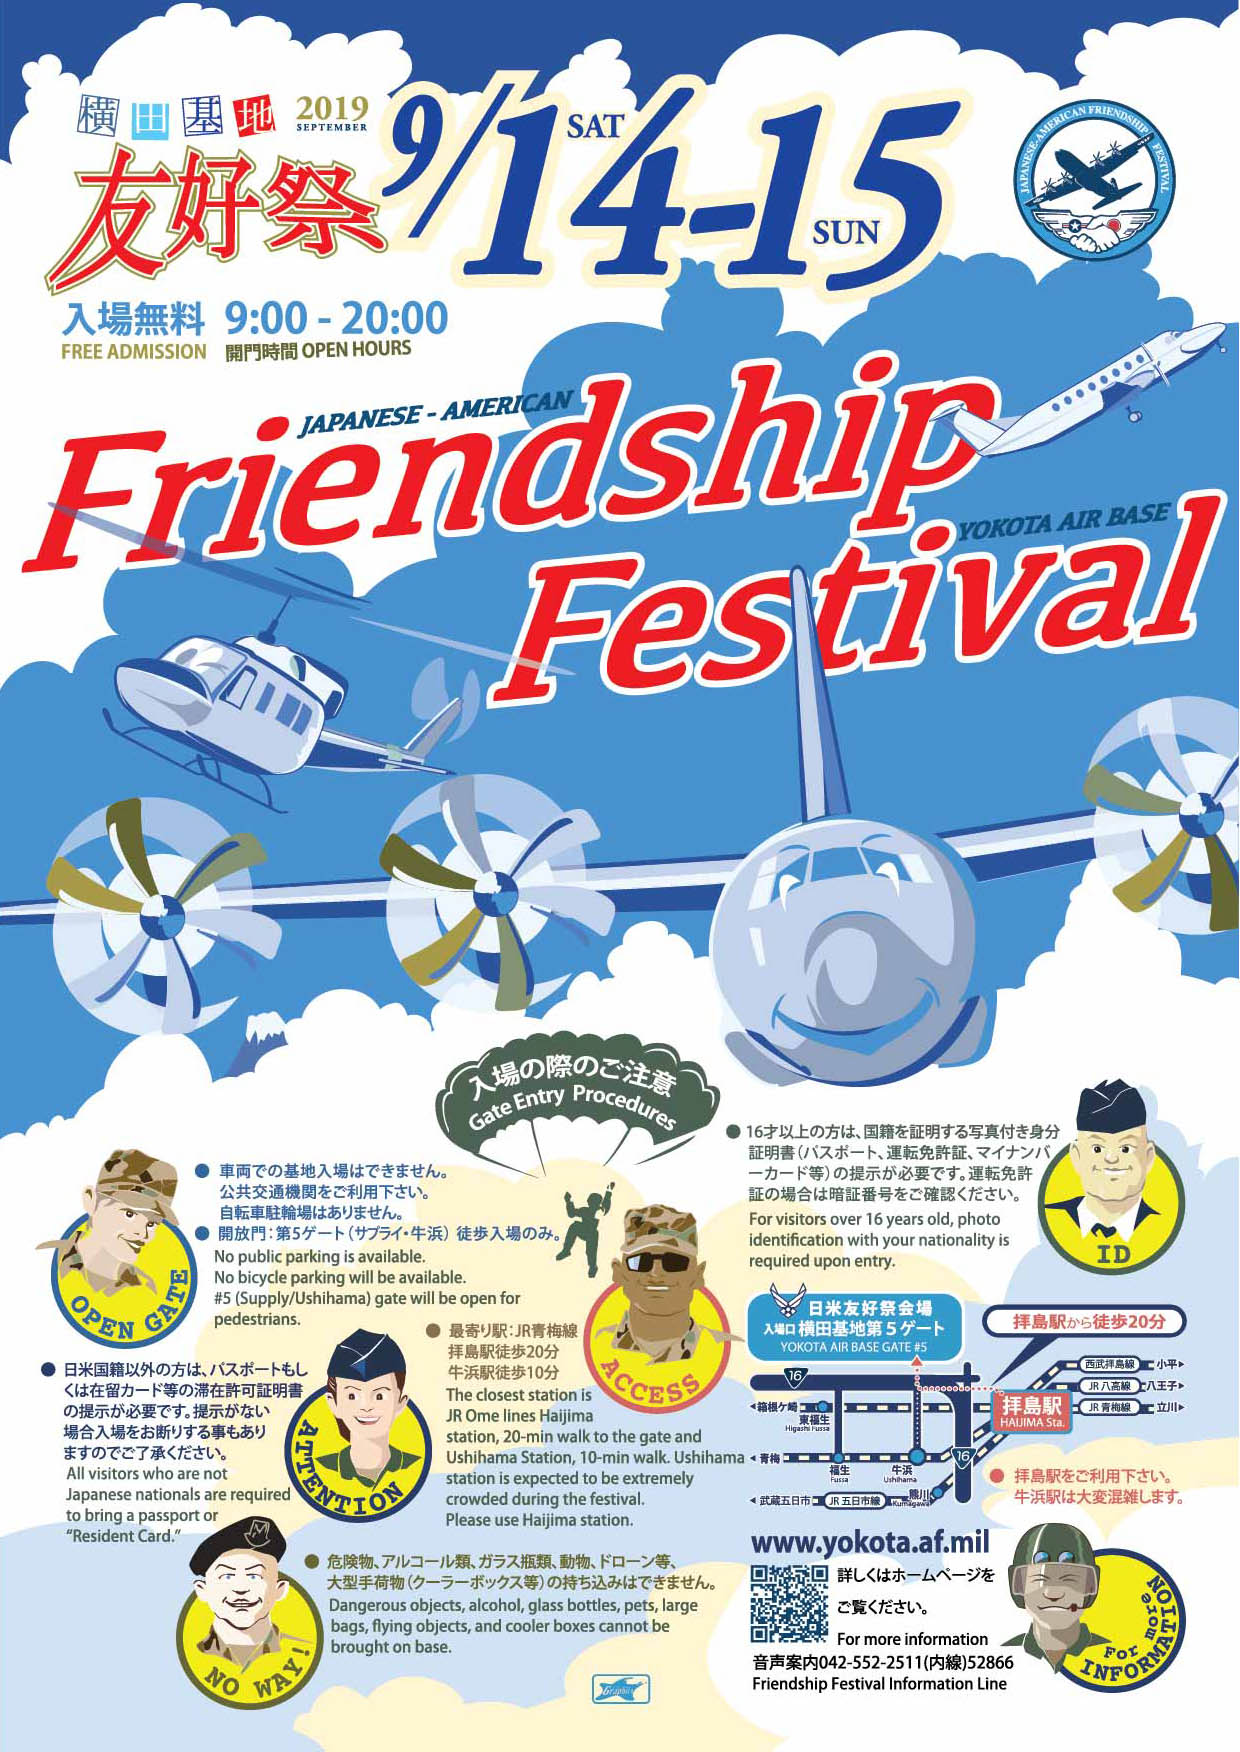 在日米空軍 横田基地日米友好祭2019ポスター